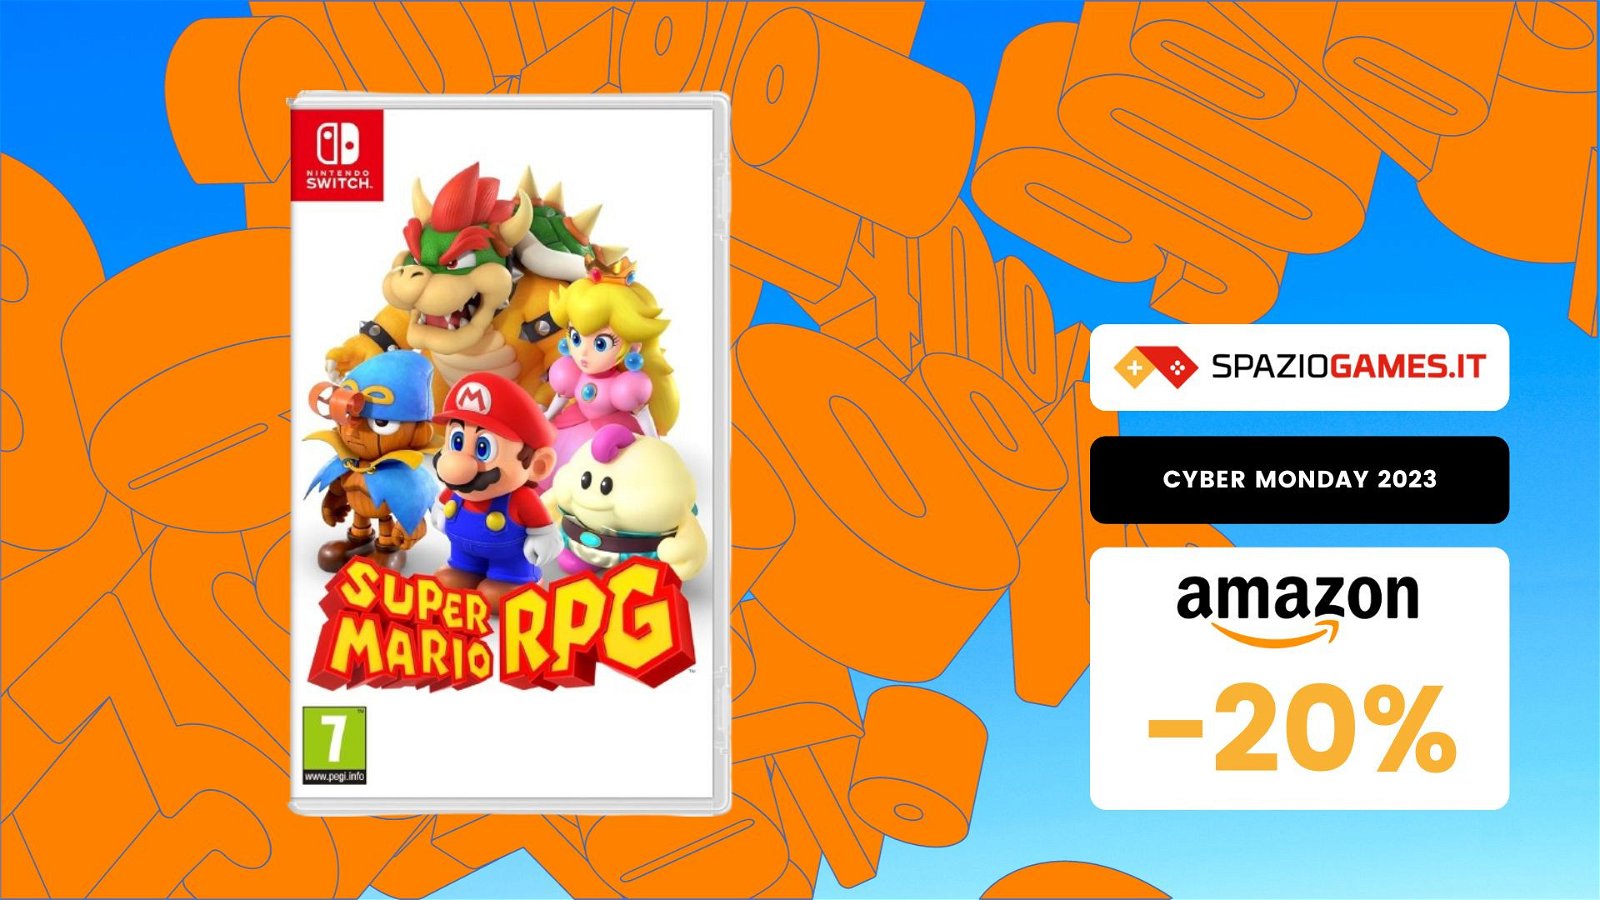 Super Mario RPG: ULTIMO GIORNO per averlo a solo 47,90€!